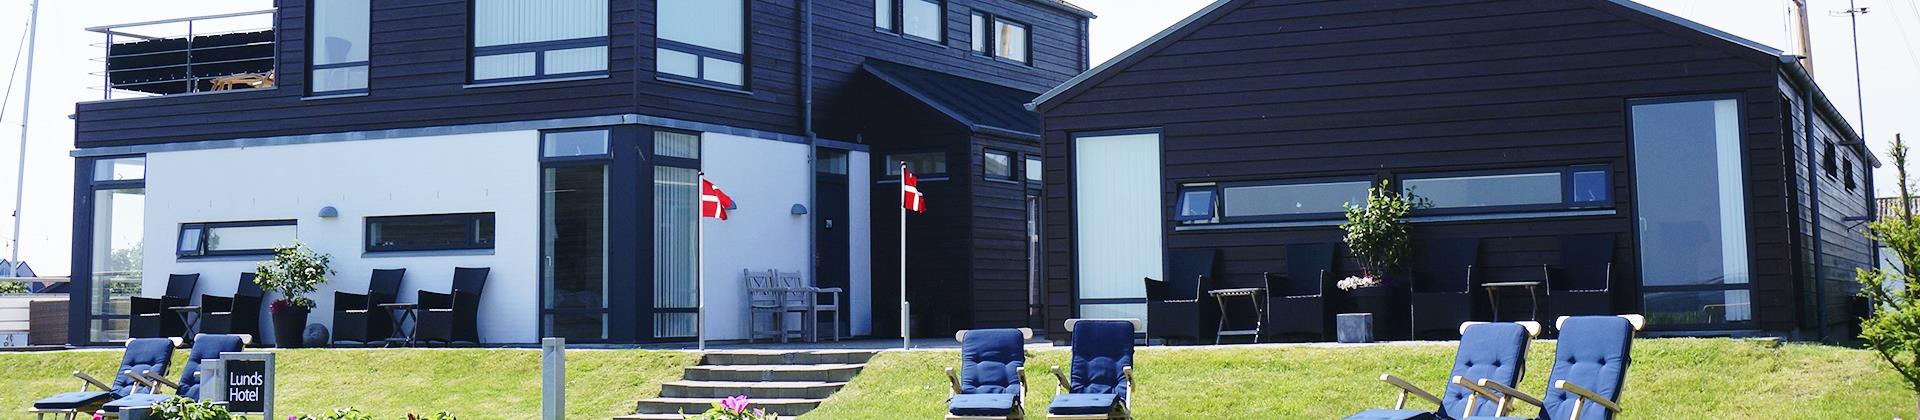 Velkommen til Lunds Hotel¤Familiedrevet badehotel placeret ved hav & søbad